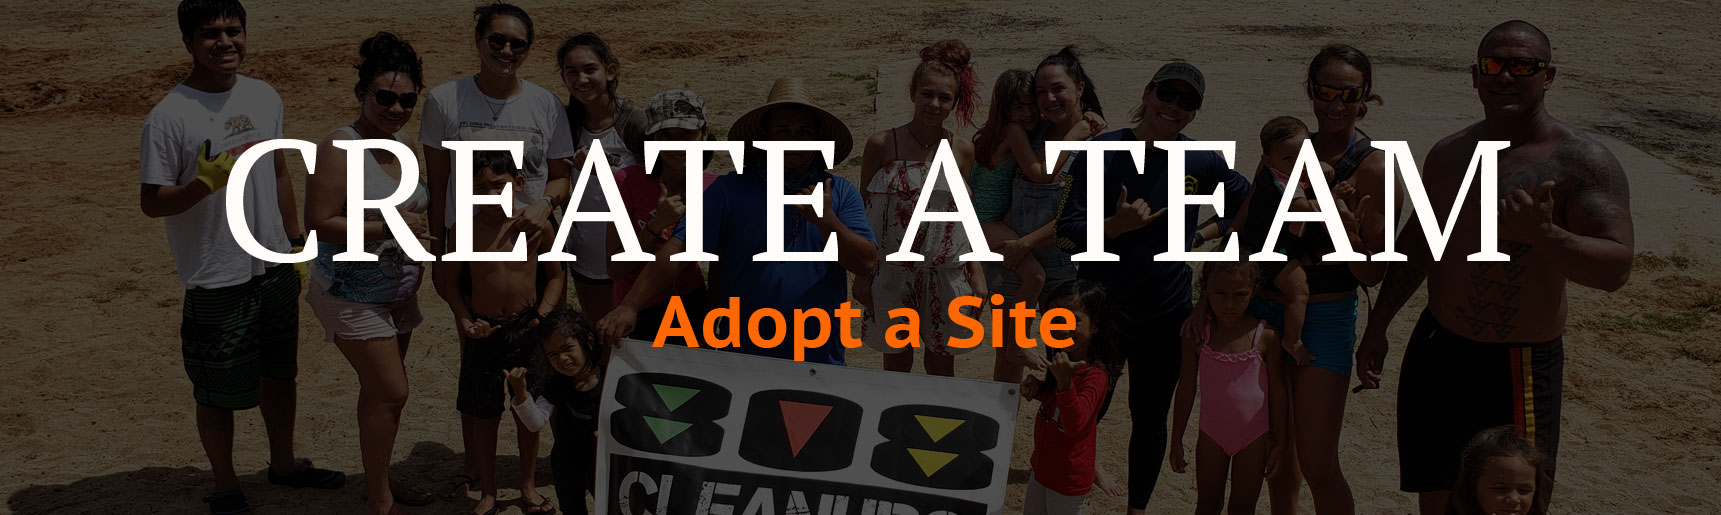 Create a team in 808 Cleanups to Adopt a Site